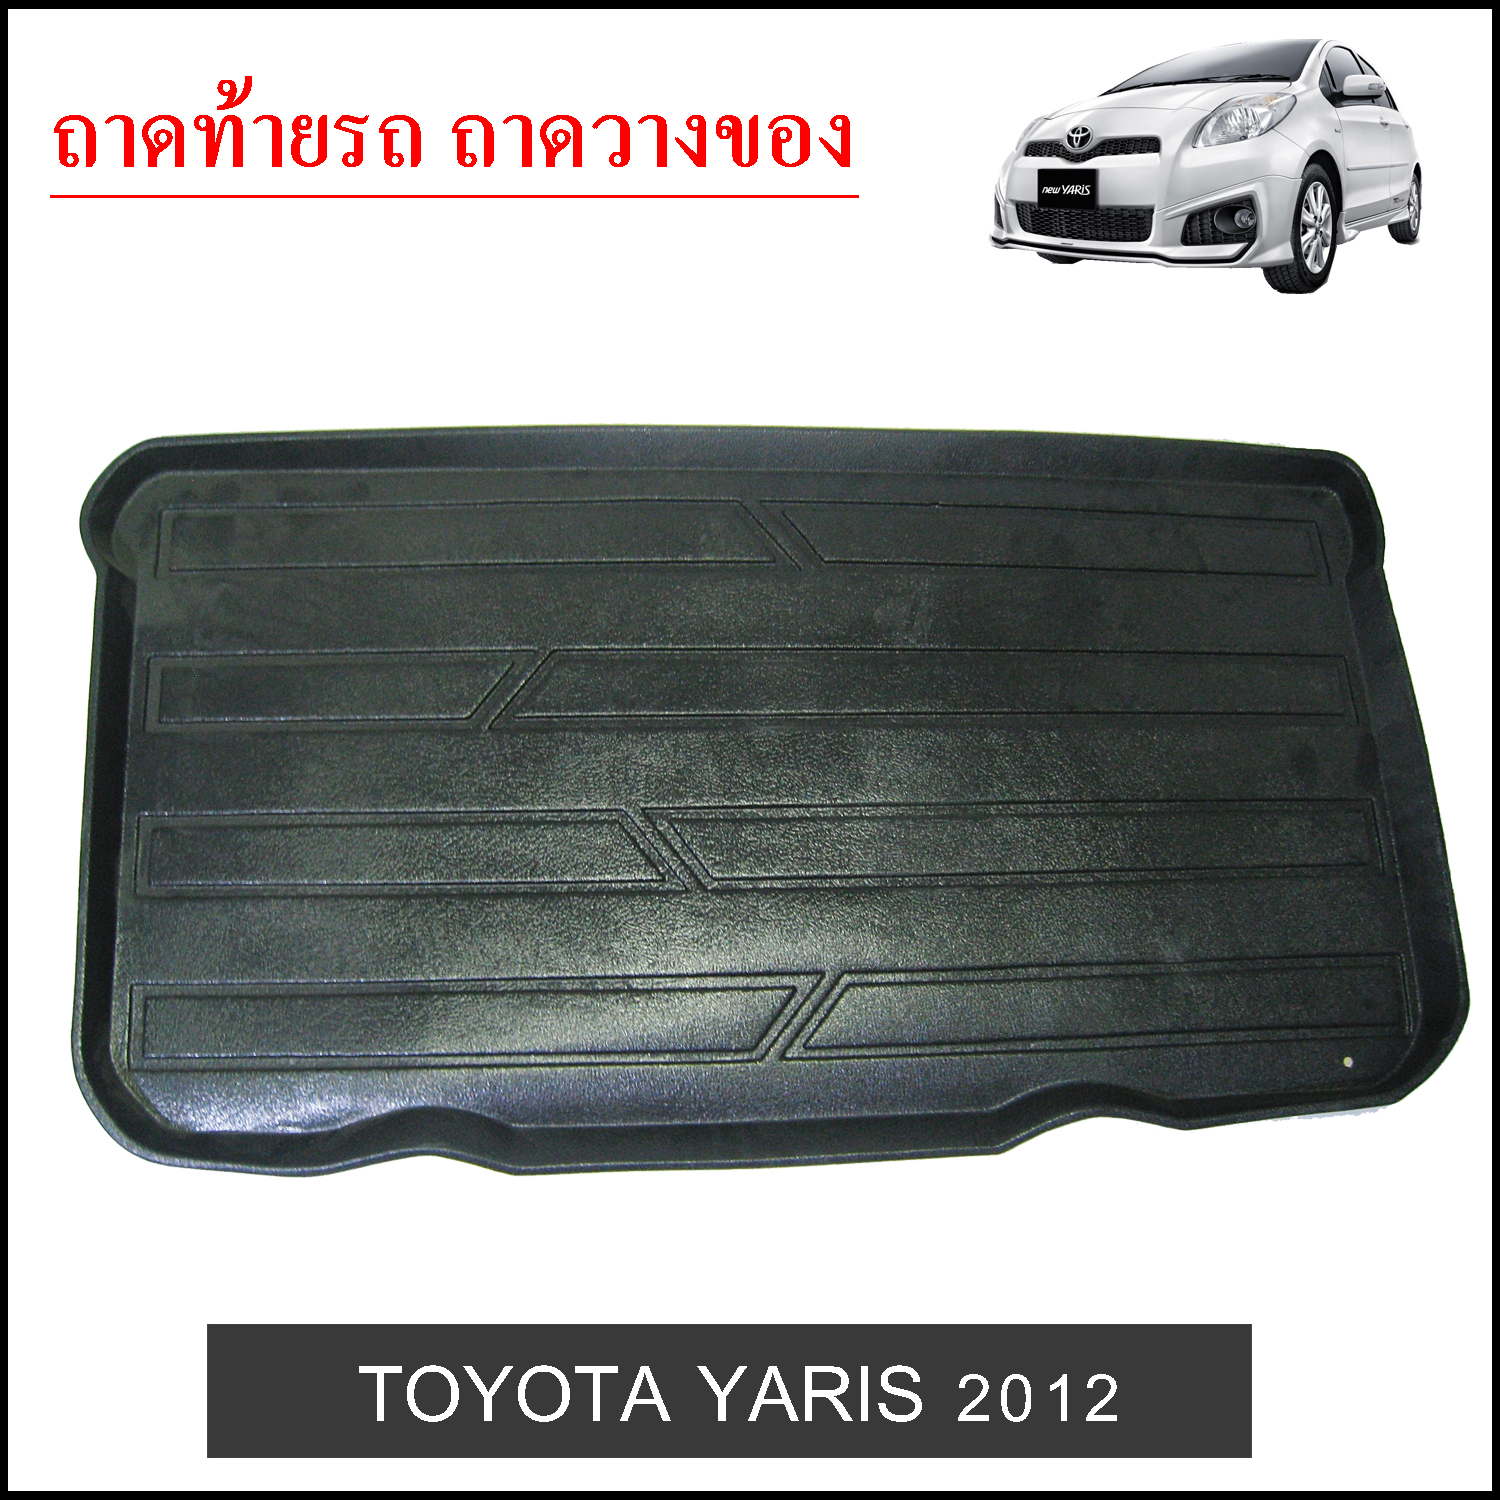 ถาดท้ายวางของ Toyota Yaris 2012